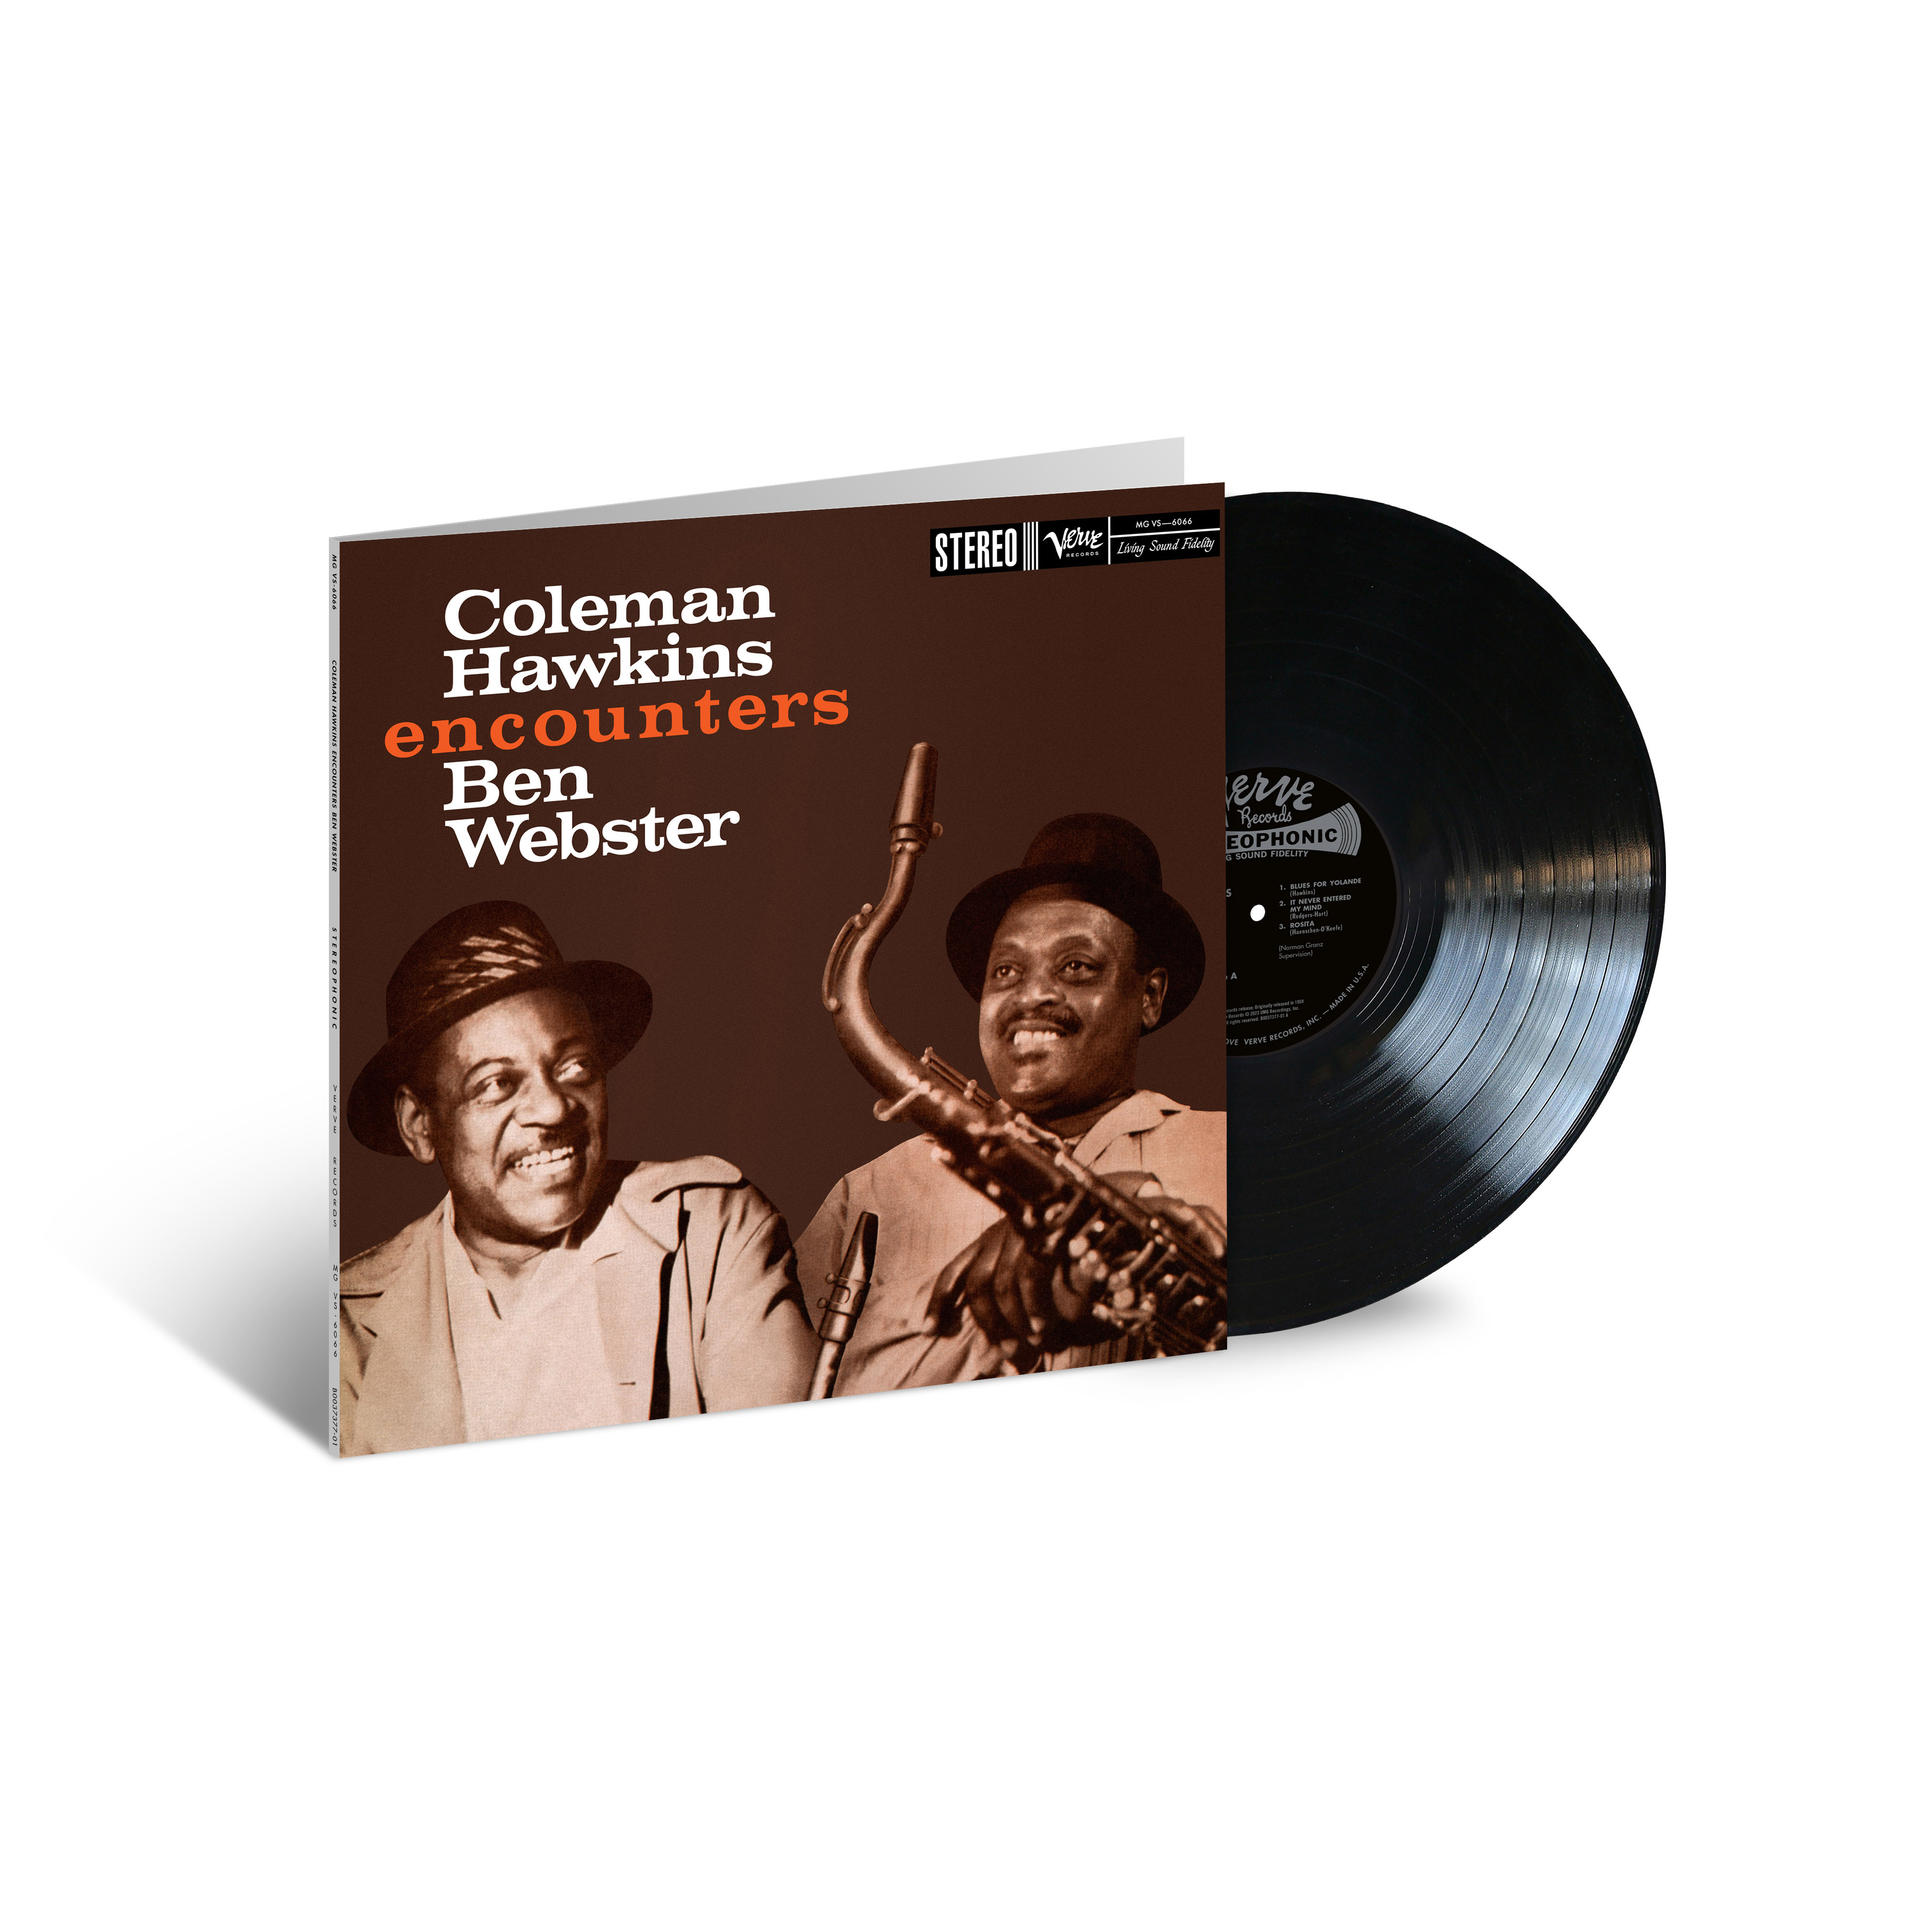 Ben Webster, Encounters Sounds) Hawkins (Vinyl) Ben Webster Coleman - (Acoustic Hawkins 